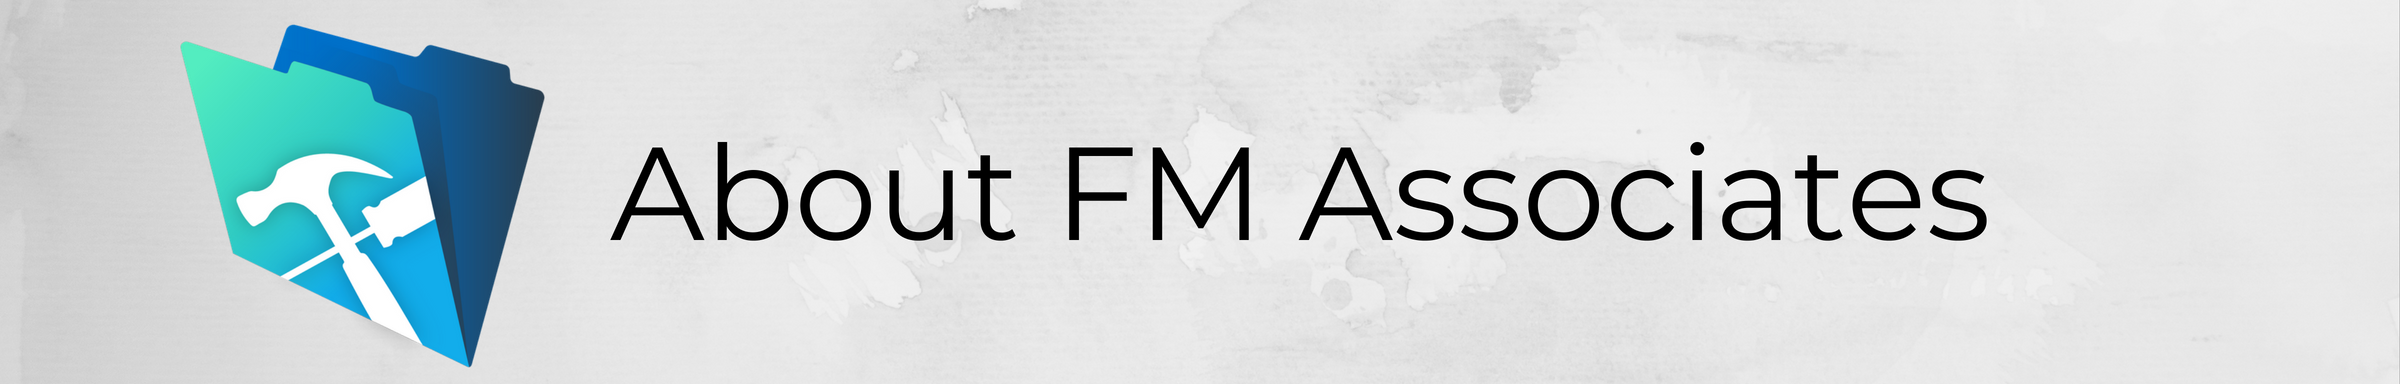 About FM Associates